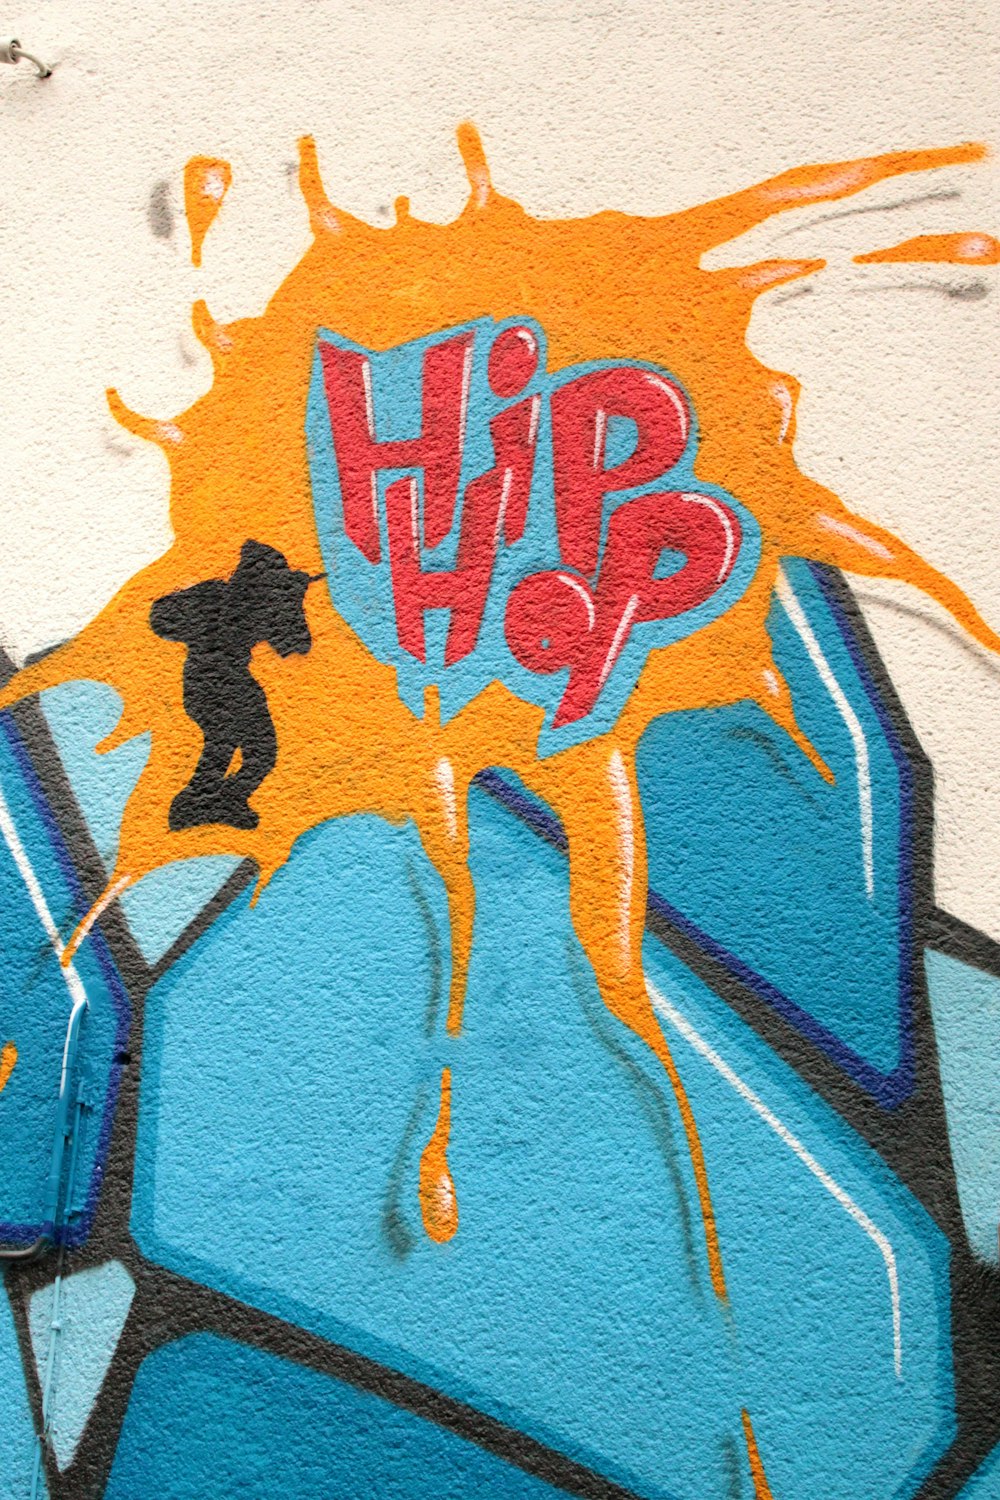 Graffiti de Hip Hop